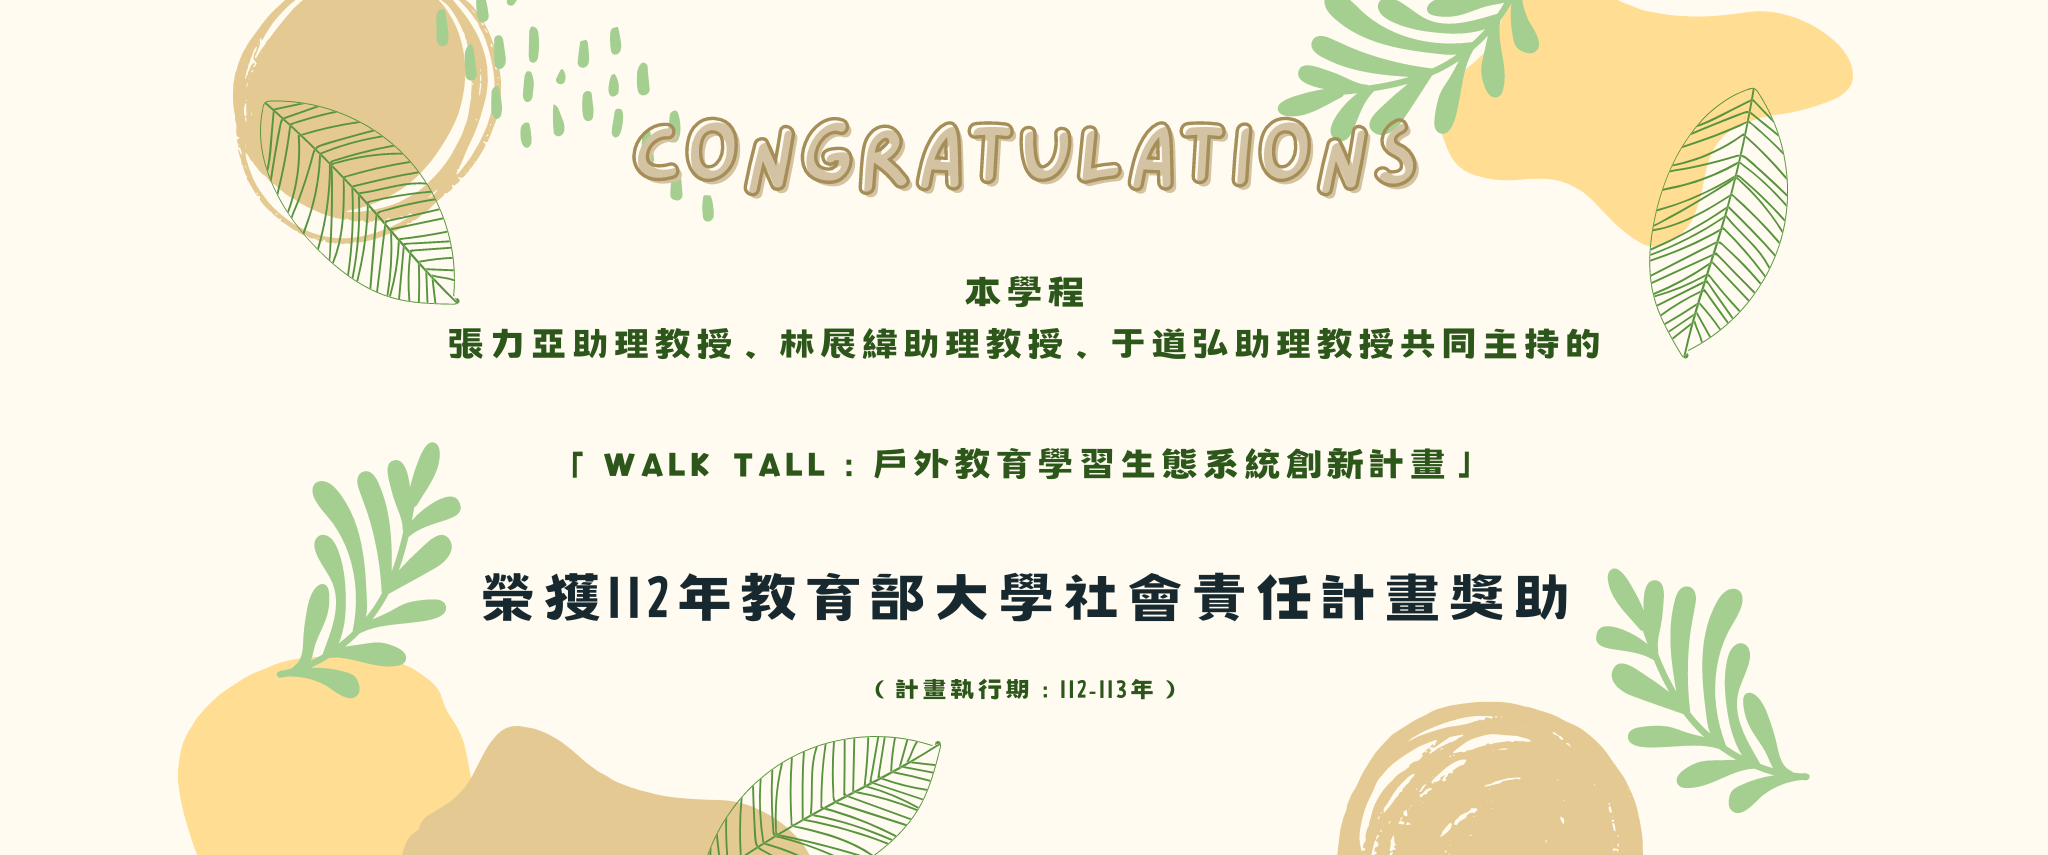 本學程張力亞、林展緯、于道弘助理教授，共同主持的「Walk Tall：戶外教育學習生態系統創新計畫」，榮獲112年教育部大學社會責任計畫獎助